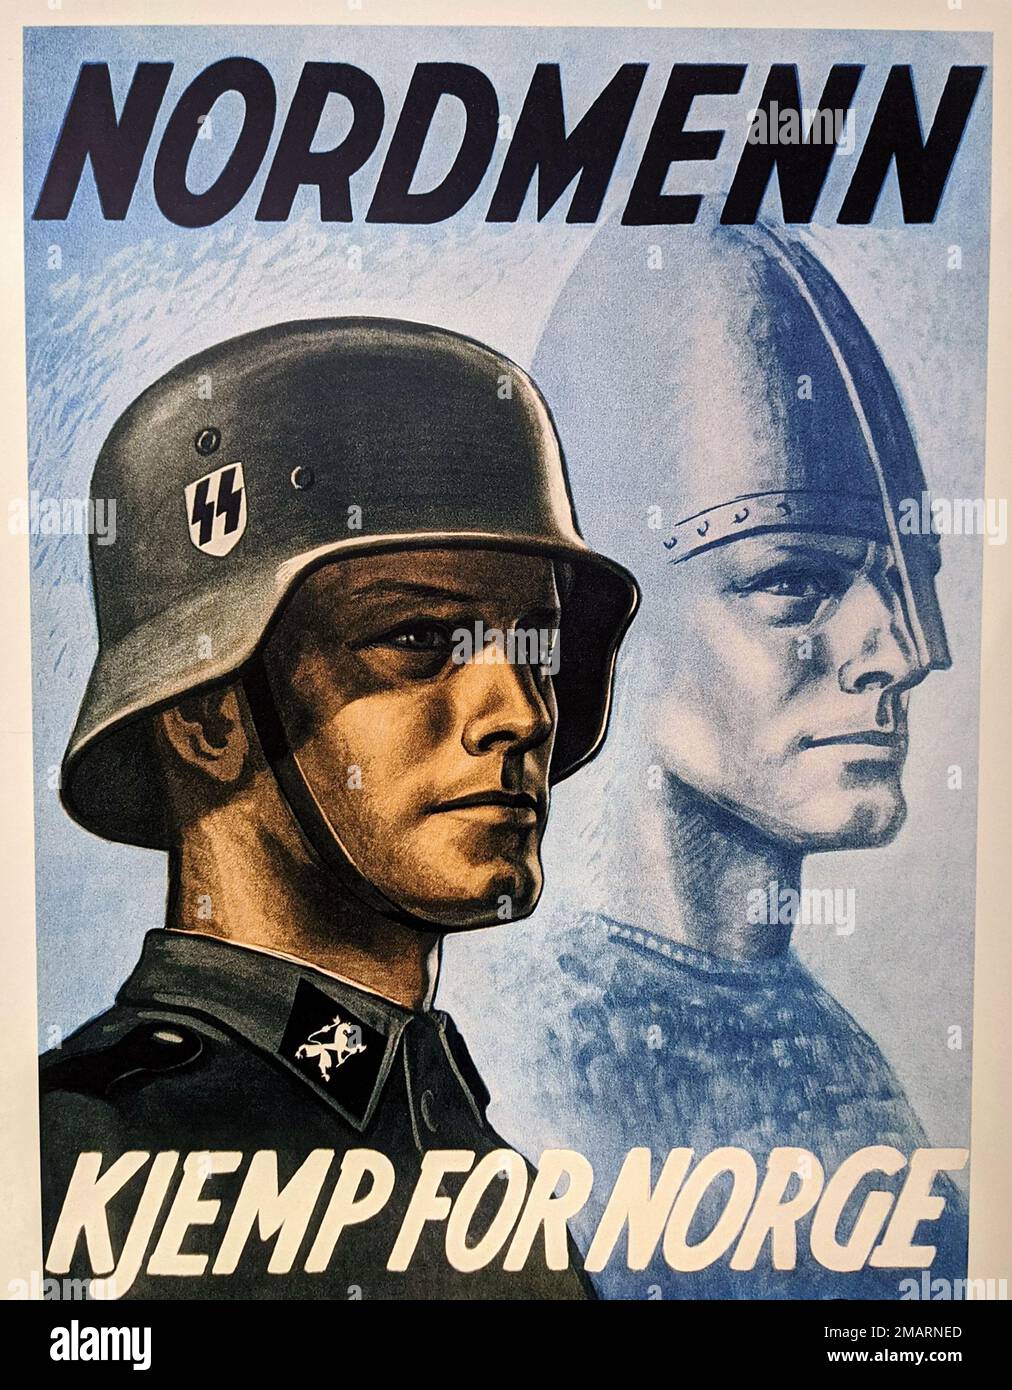 1942, OSLO , NORVÈGE : le dictateur allemand de Fuhrer ADOLF HITLER ( 1889 - 1945 ), dirigeant du troisième Reich . Affiche de propagande pour l'enrôlement militaire NAZIST en NORVÈGE pour le WAFFEN SS Schutzstaffel ( NORDMENN : KJEMP POUR NORGE , Stortingsgata 12 , Oslo ), insistant sur le mythe de la COURSE nordique et viking ARYENNE SUPERMAN . L'organisation nationale socialiste, le plus important vecteur de terreur et la politique d'extermination de l'État national socialiste, était le SS . Illustrateur inconnu . - SECONDE GUERRE MONDIALE - NAZI - NAZIST - NAZAÏSME - NAZISTA - NAZISMO - SECONDA GUERRA MONDIALE - WW2 - GUERRE MONDIALE Banque D'Images